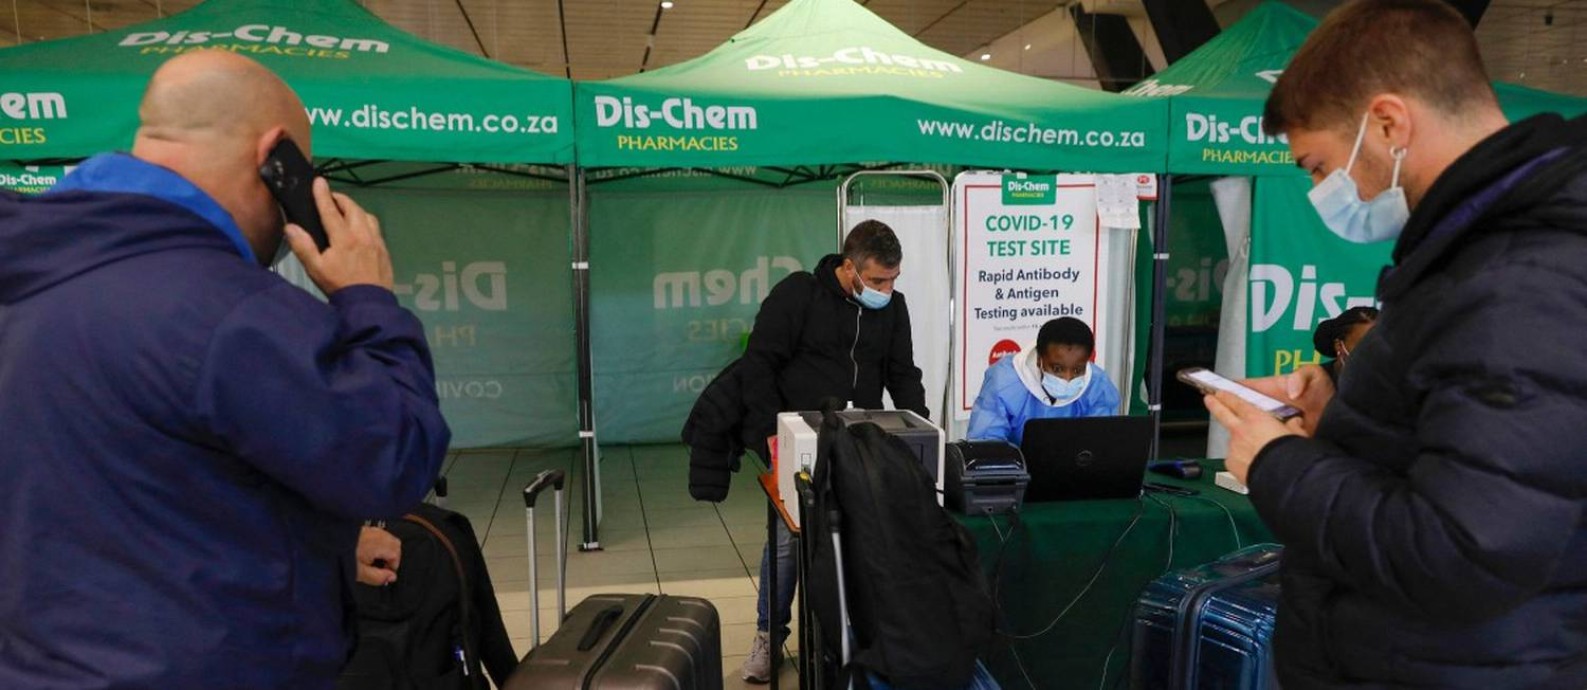 Passageiros aguardam o resultado do exame PCR no Aeroporto Internacional de Joanesburgo, depois que vários países proibiram voos da África do Sul após a descoberta da variante Ômicron Foto: PHILL MAGAKOE / AFP